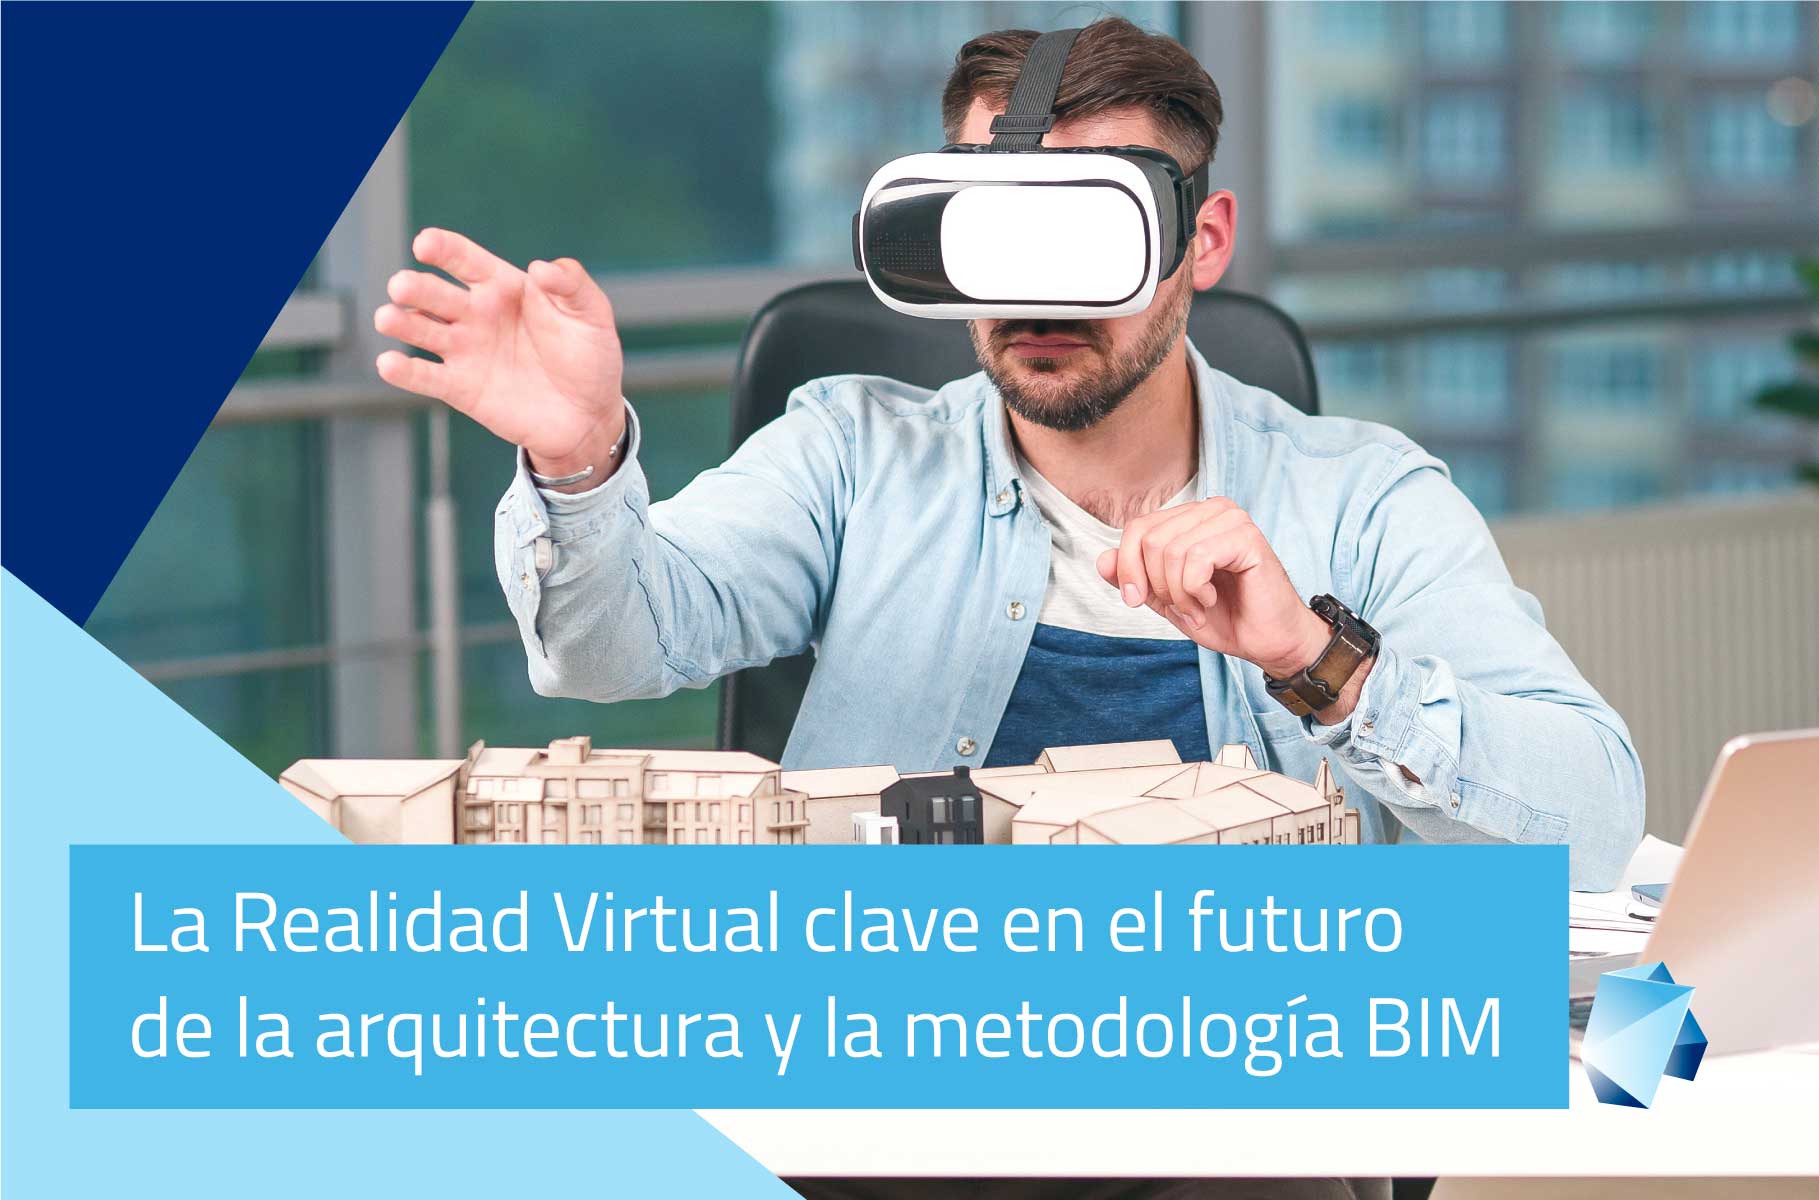 La realidad virtual clave en el futuro de la arquitectura y la metodología BIM